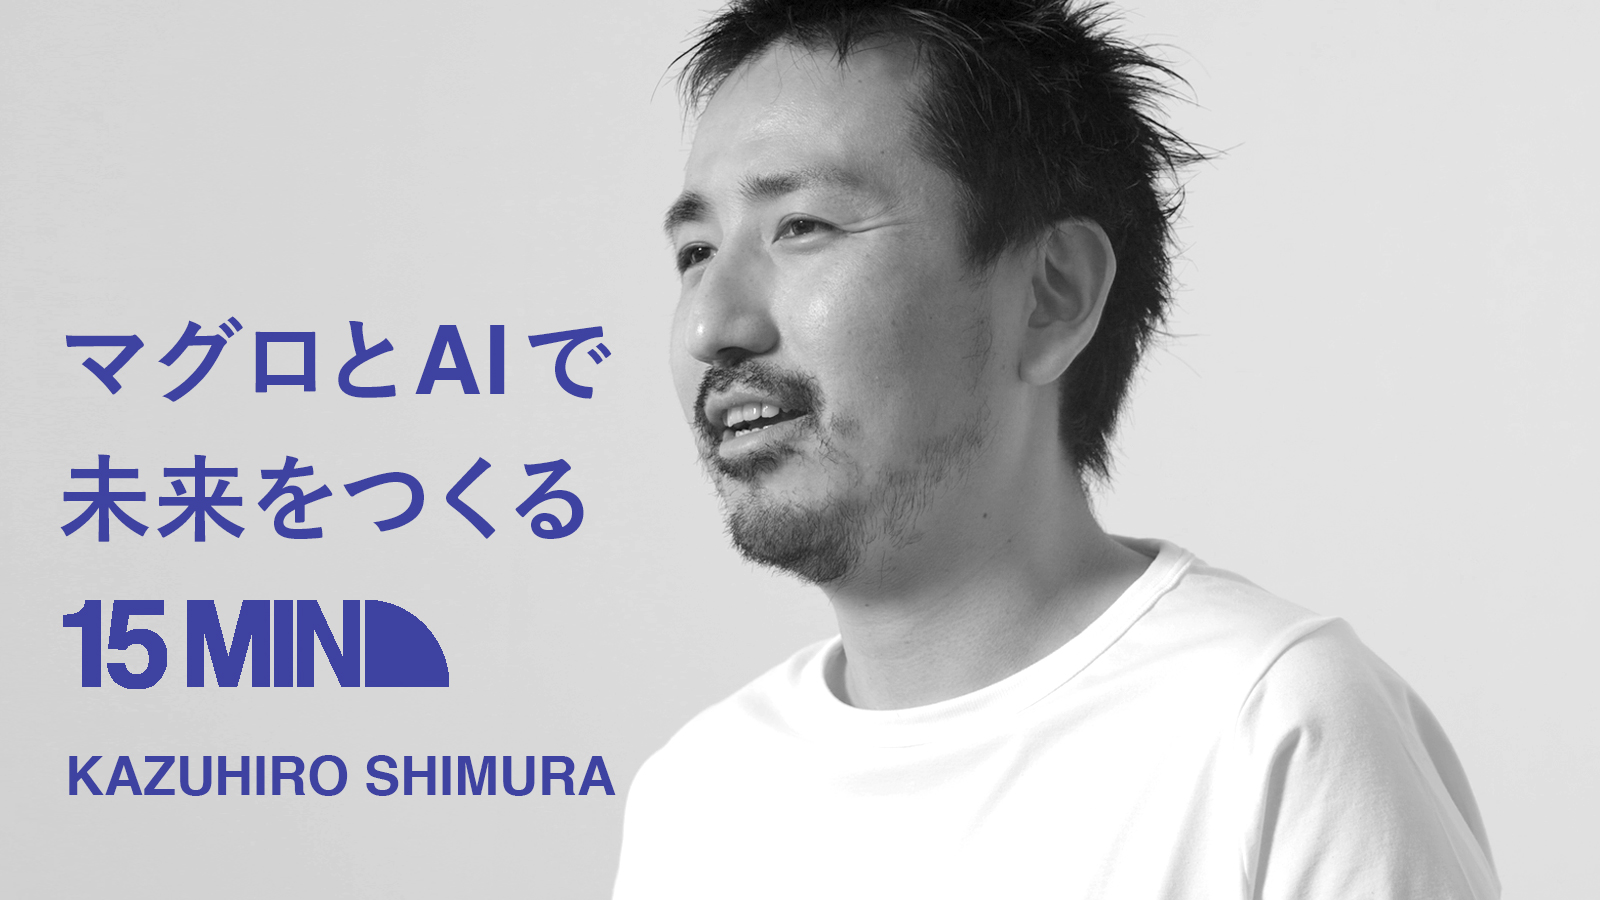 マグロとAIで未来をつくる 15MIN KAZUHIRO SHIMURA